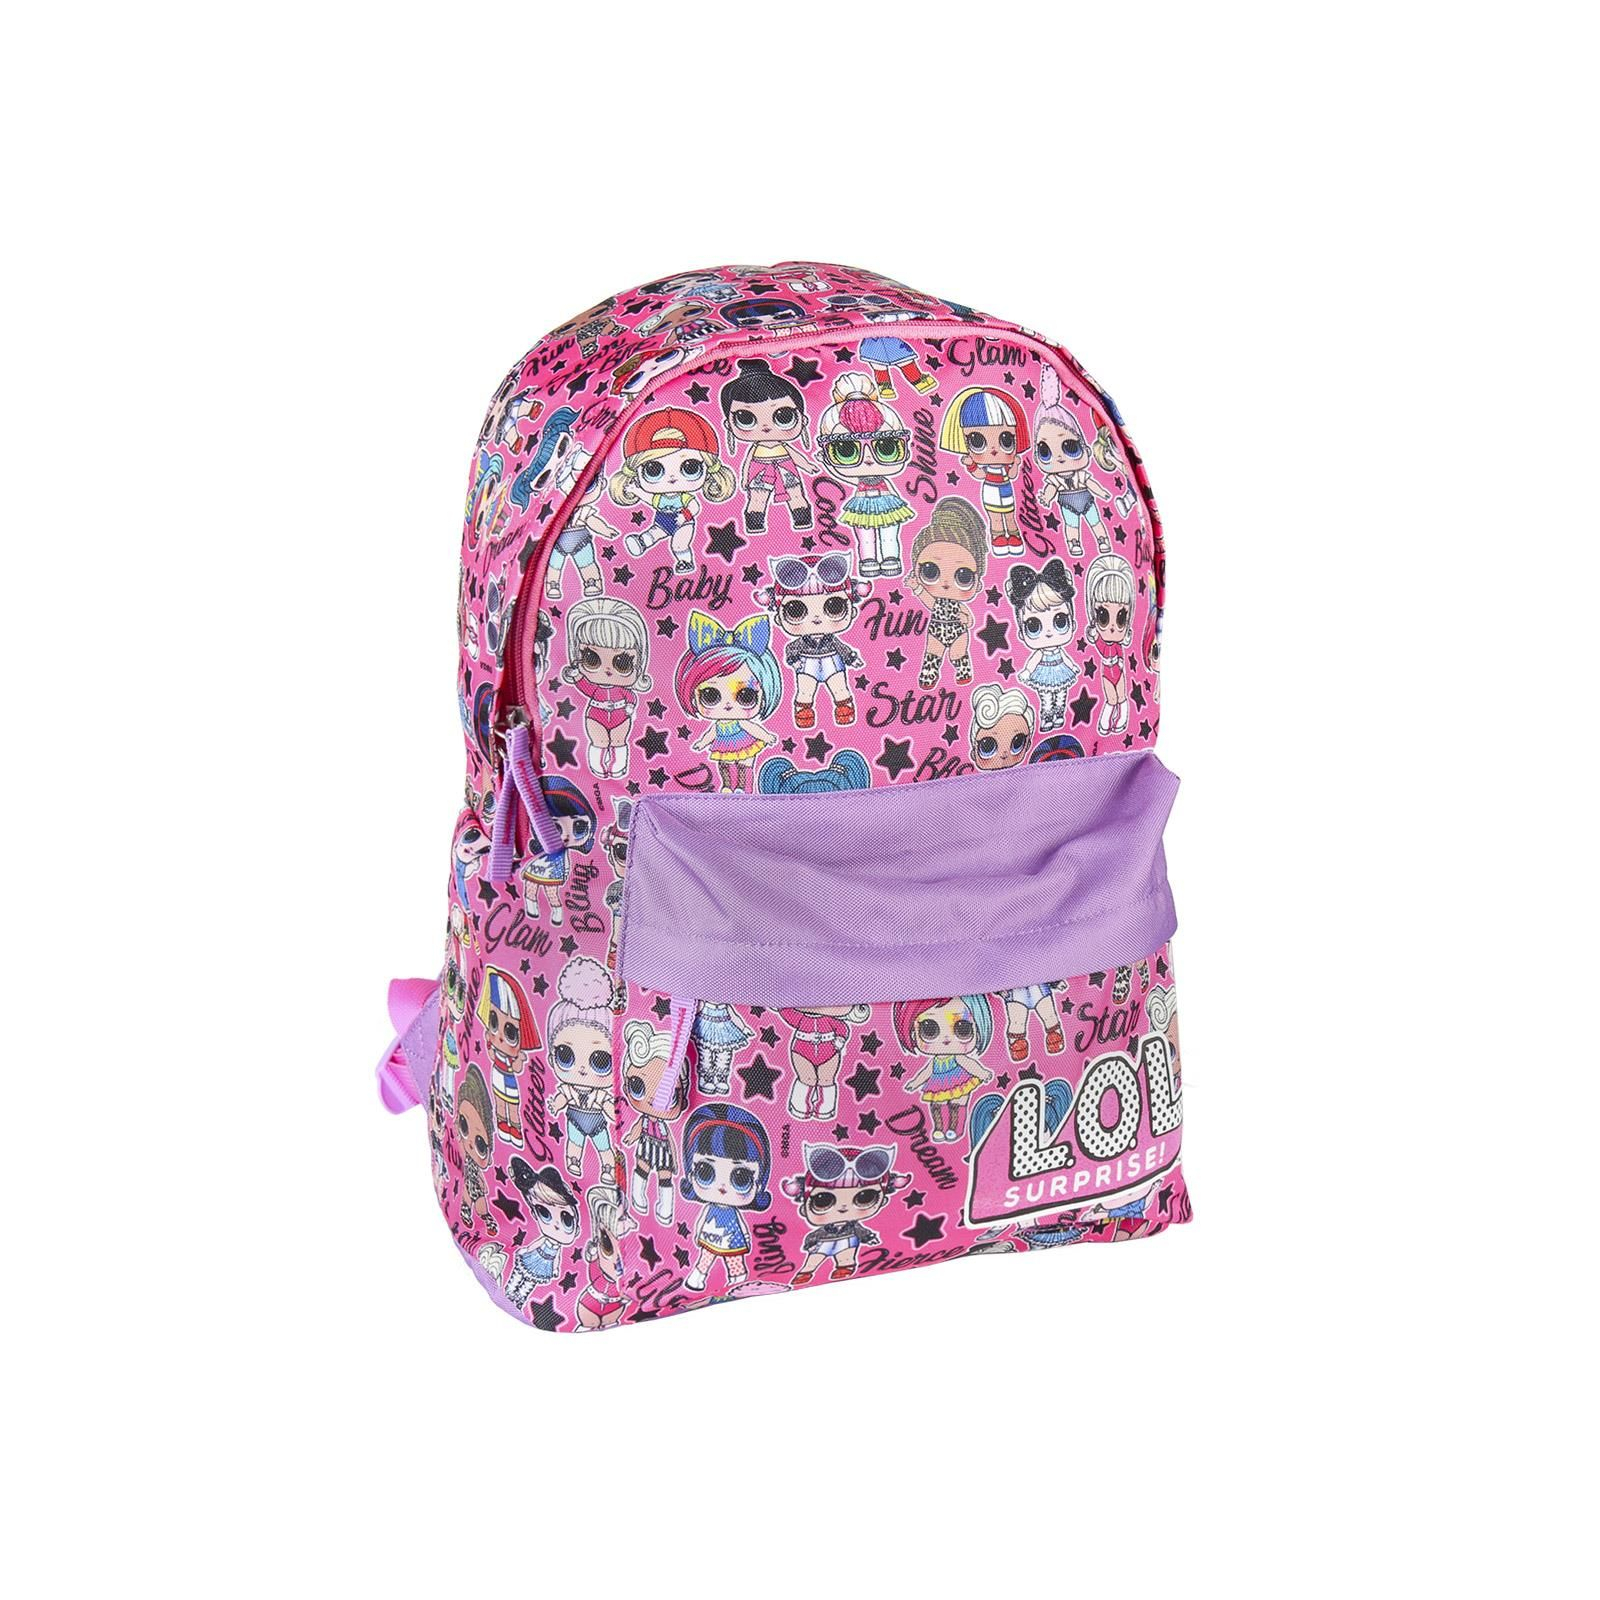 Рюкзак школьный Cerda LOL - School Backpack Pink (CERDA-2100003020)